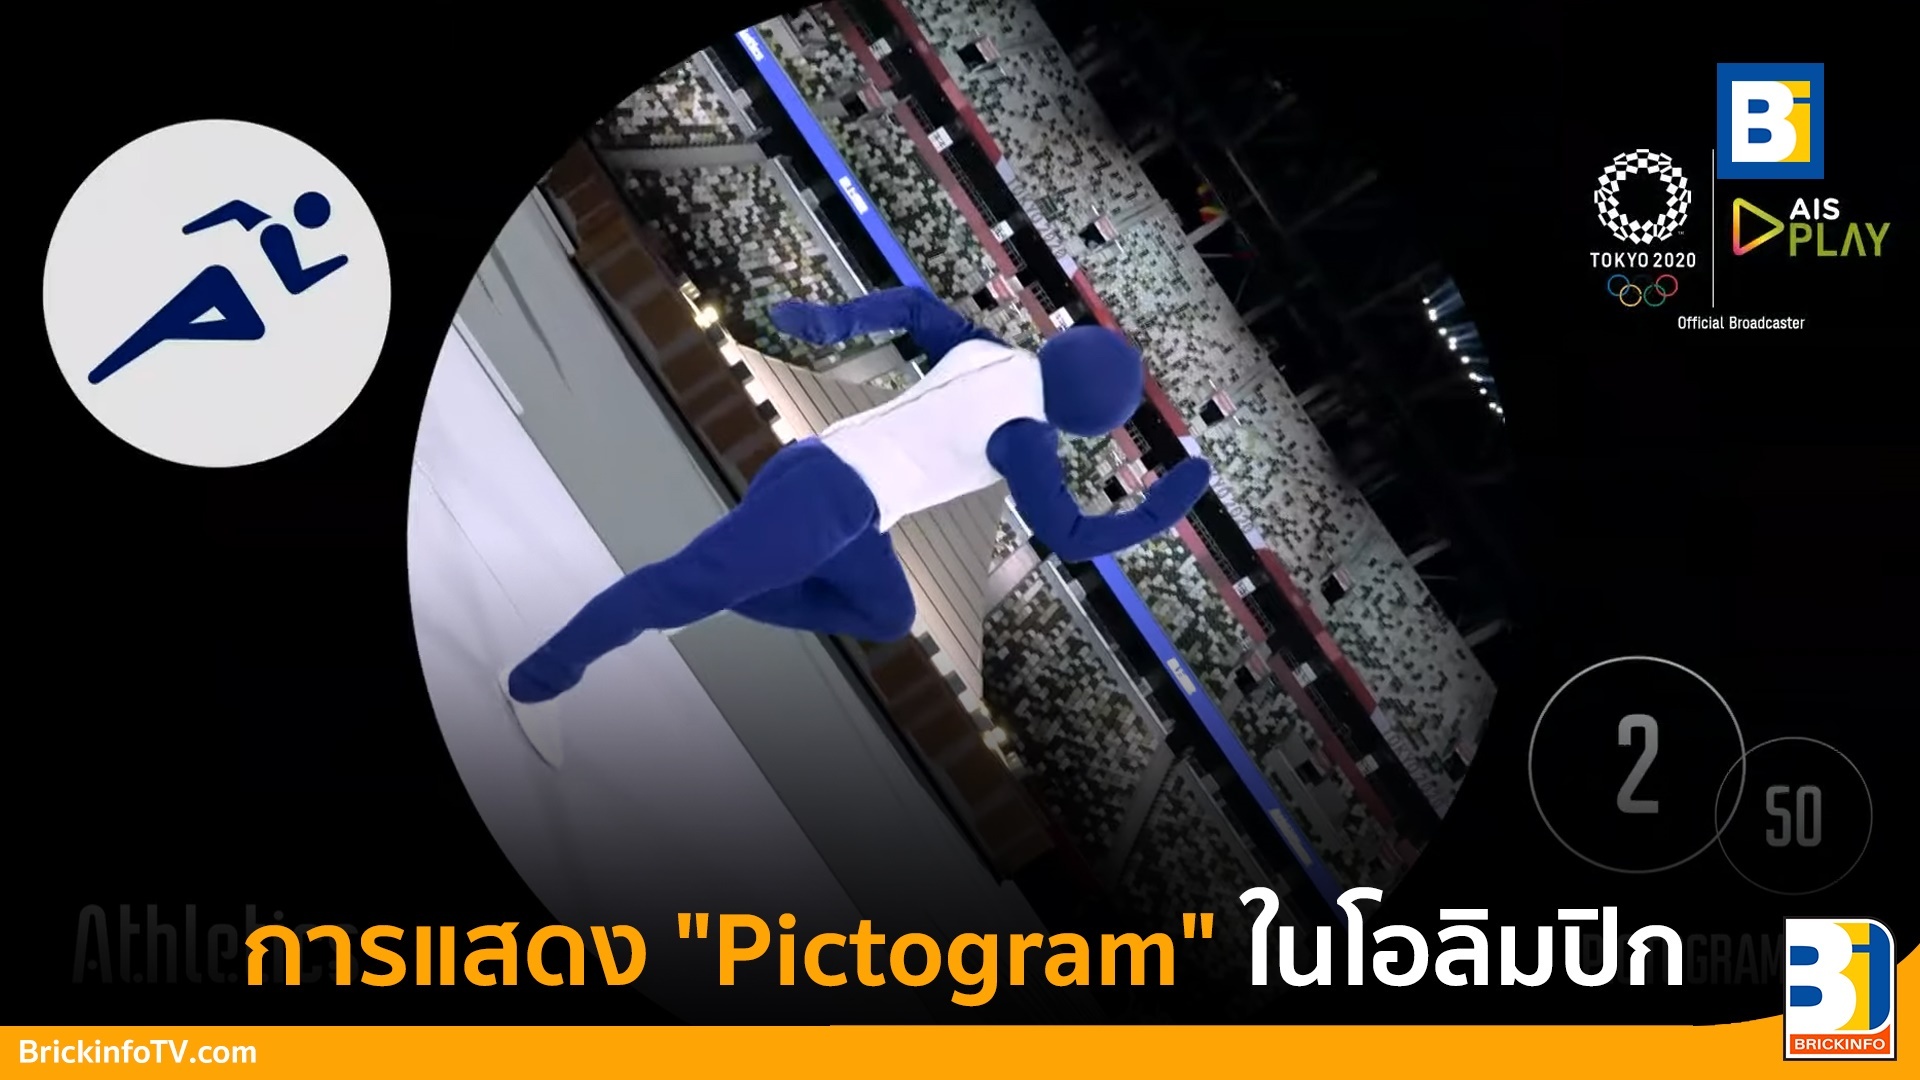 โชว์โอลิมปิก Pictogram